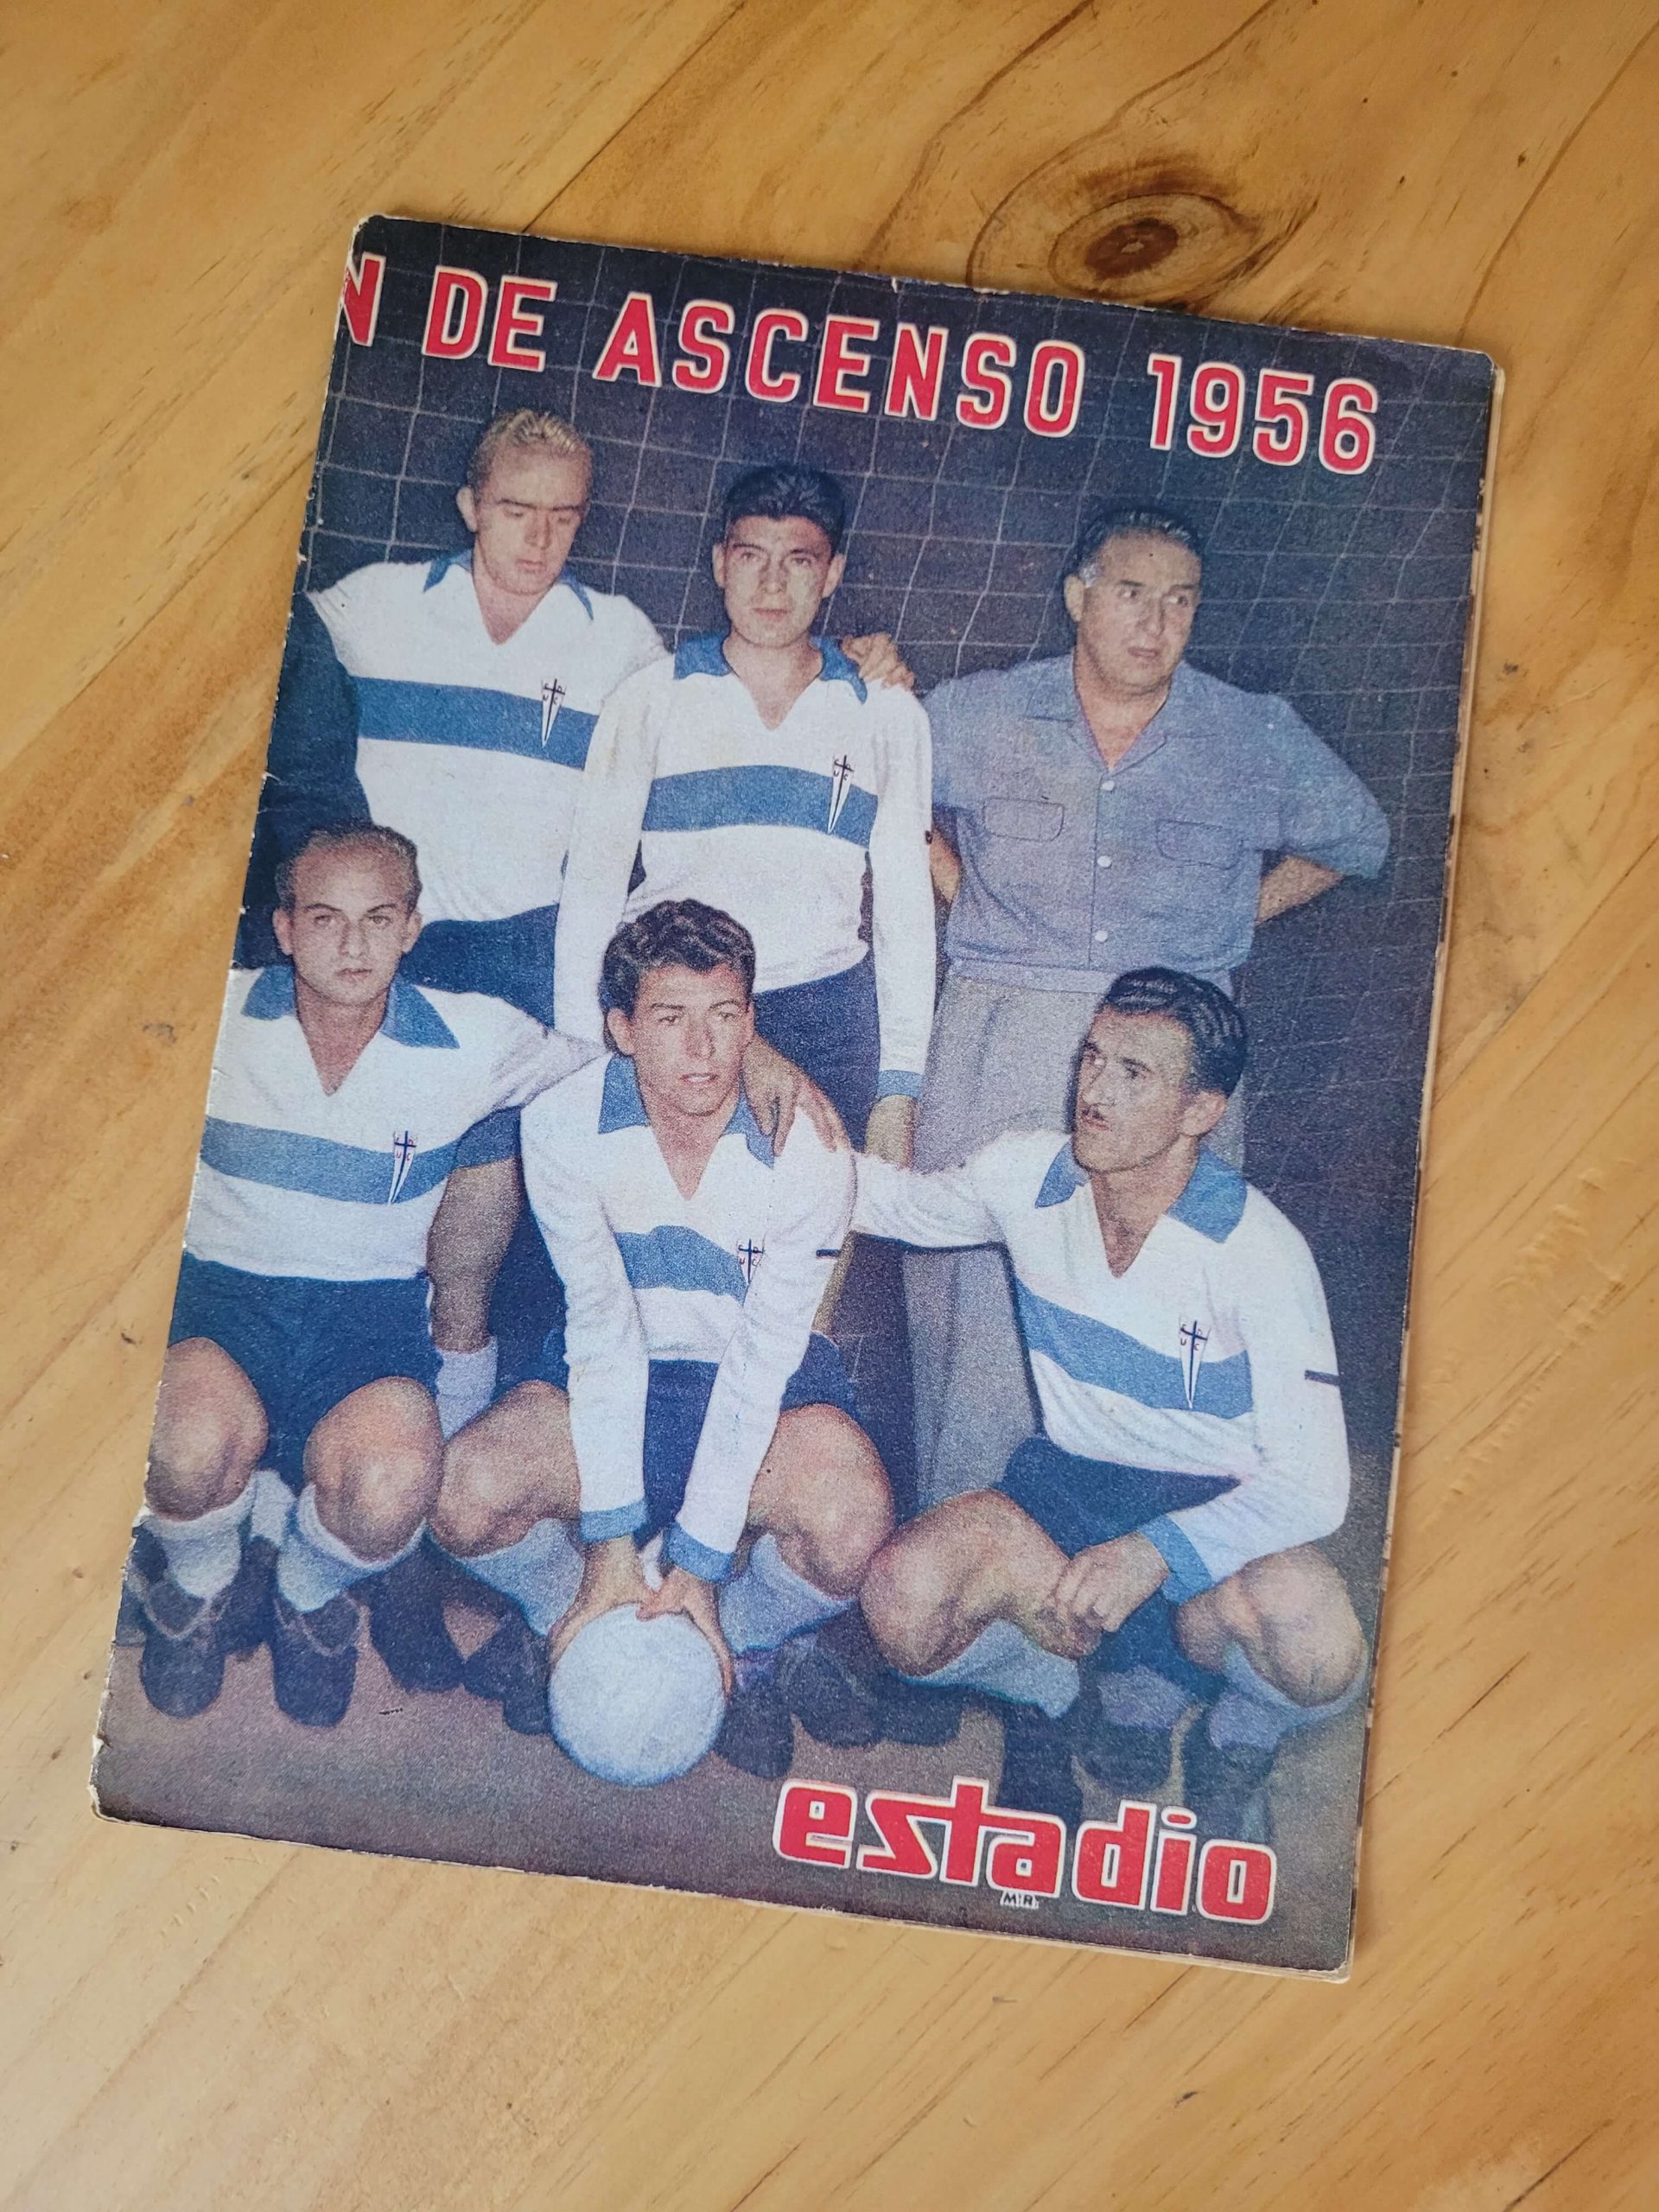 (1956) ESTADIO portada Universidad Católica campeón del Ascenso 1956